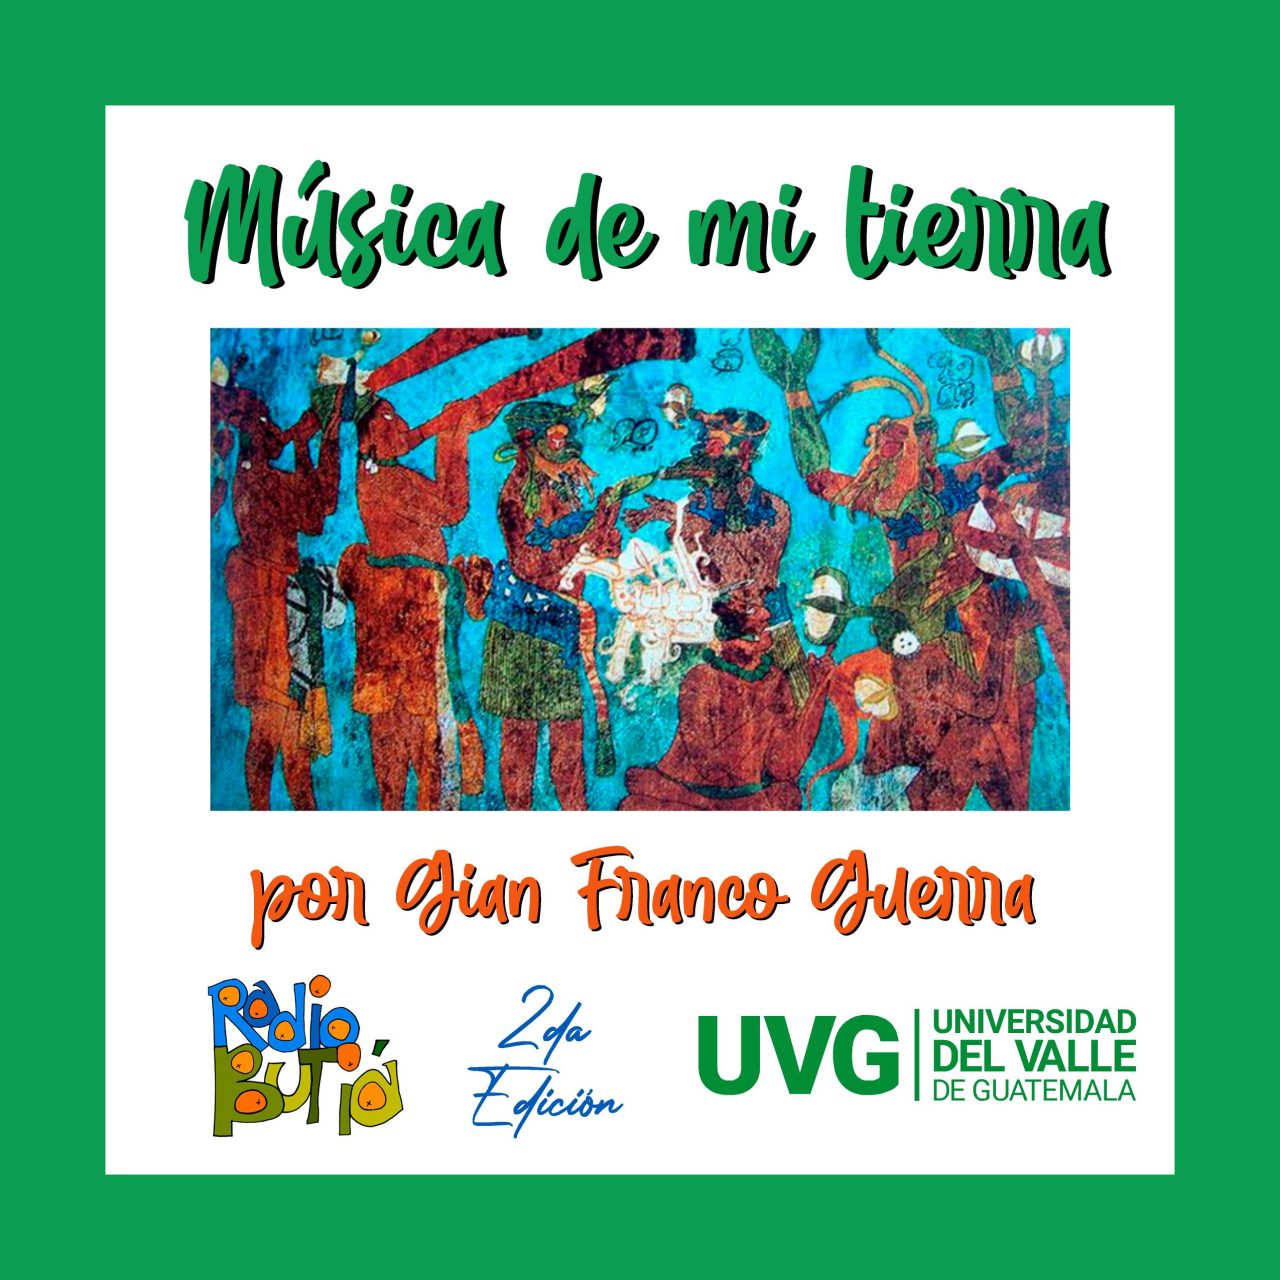 https://butiaplus.uy/wp-content/uploads/2022/12/Afiche-Sonidos-de-Guatemala-Musica-de-mi-tierra-1280x1280.jpg